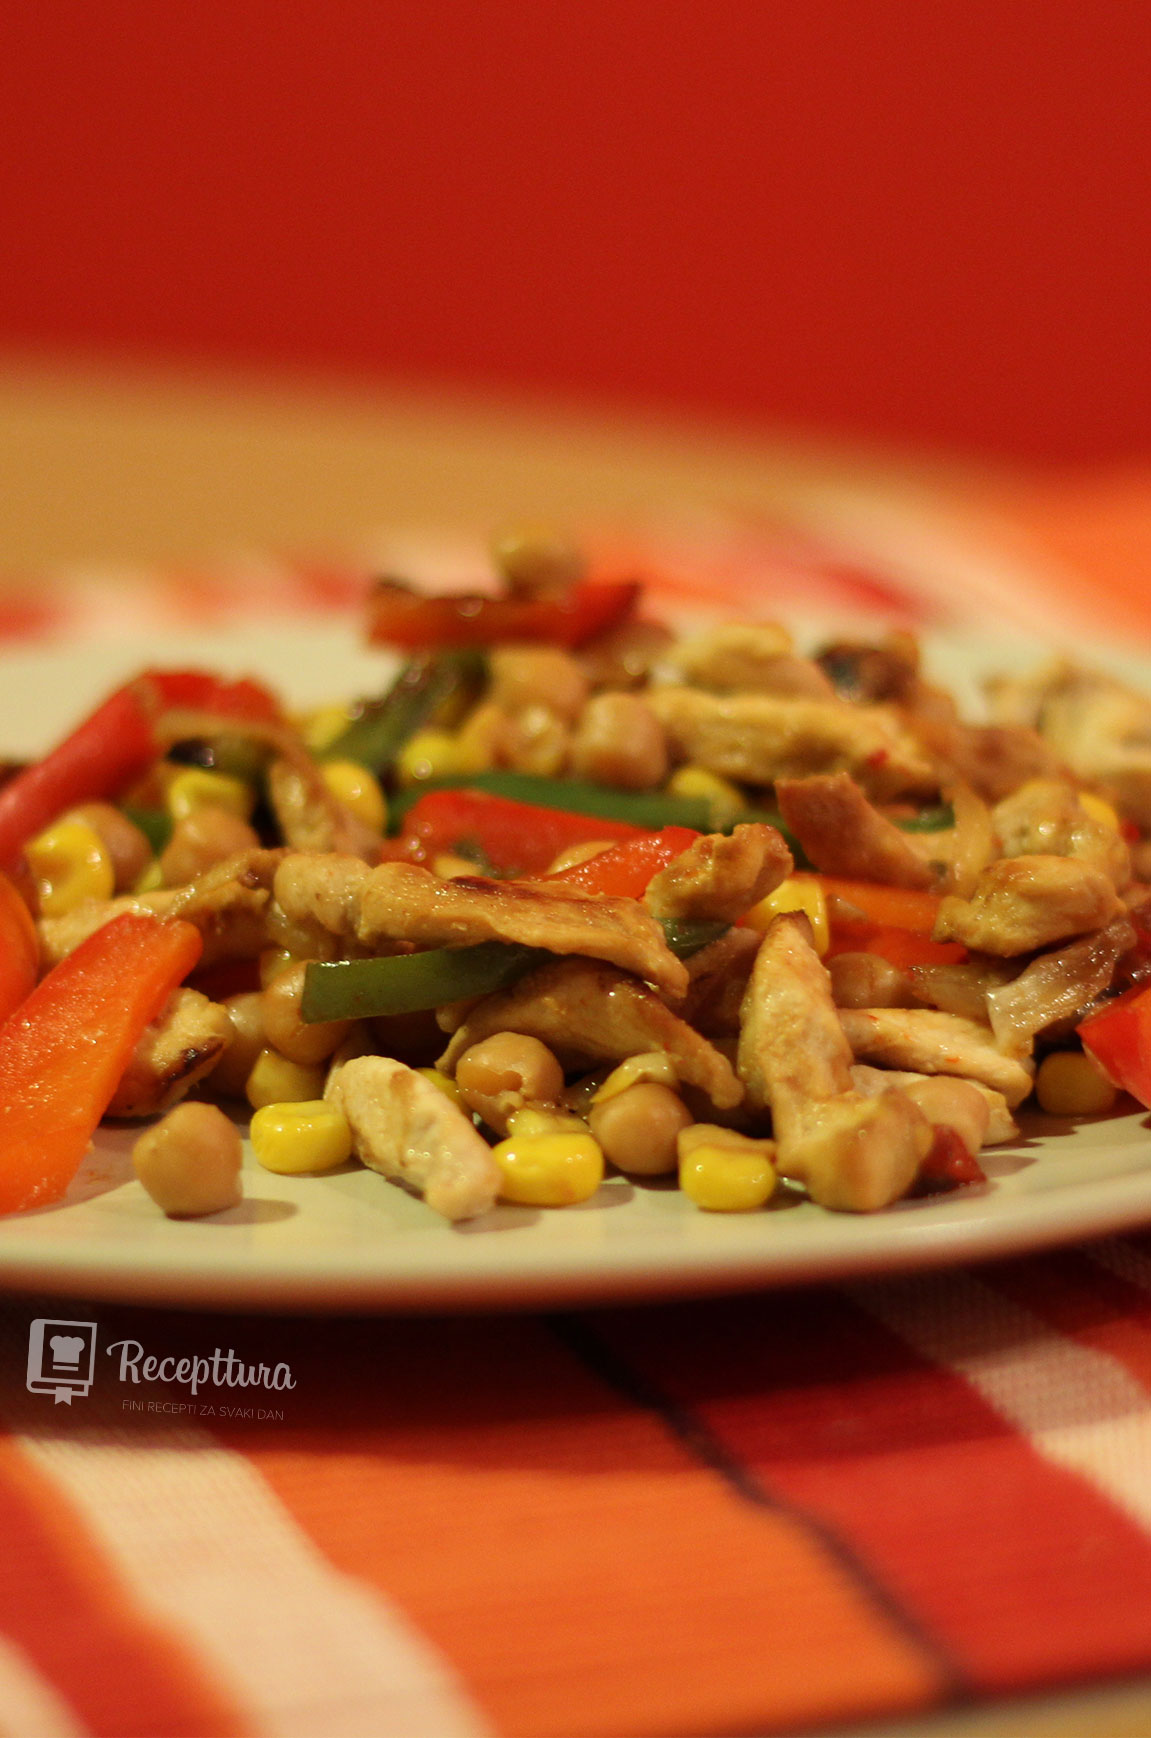 Receptturin brzi wok sa piletinom i povrćem poslužen je na stolu.